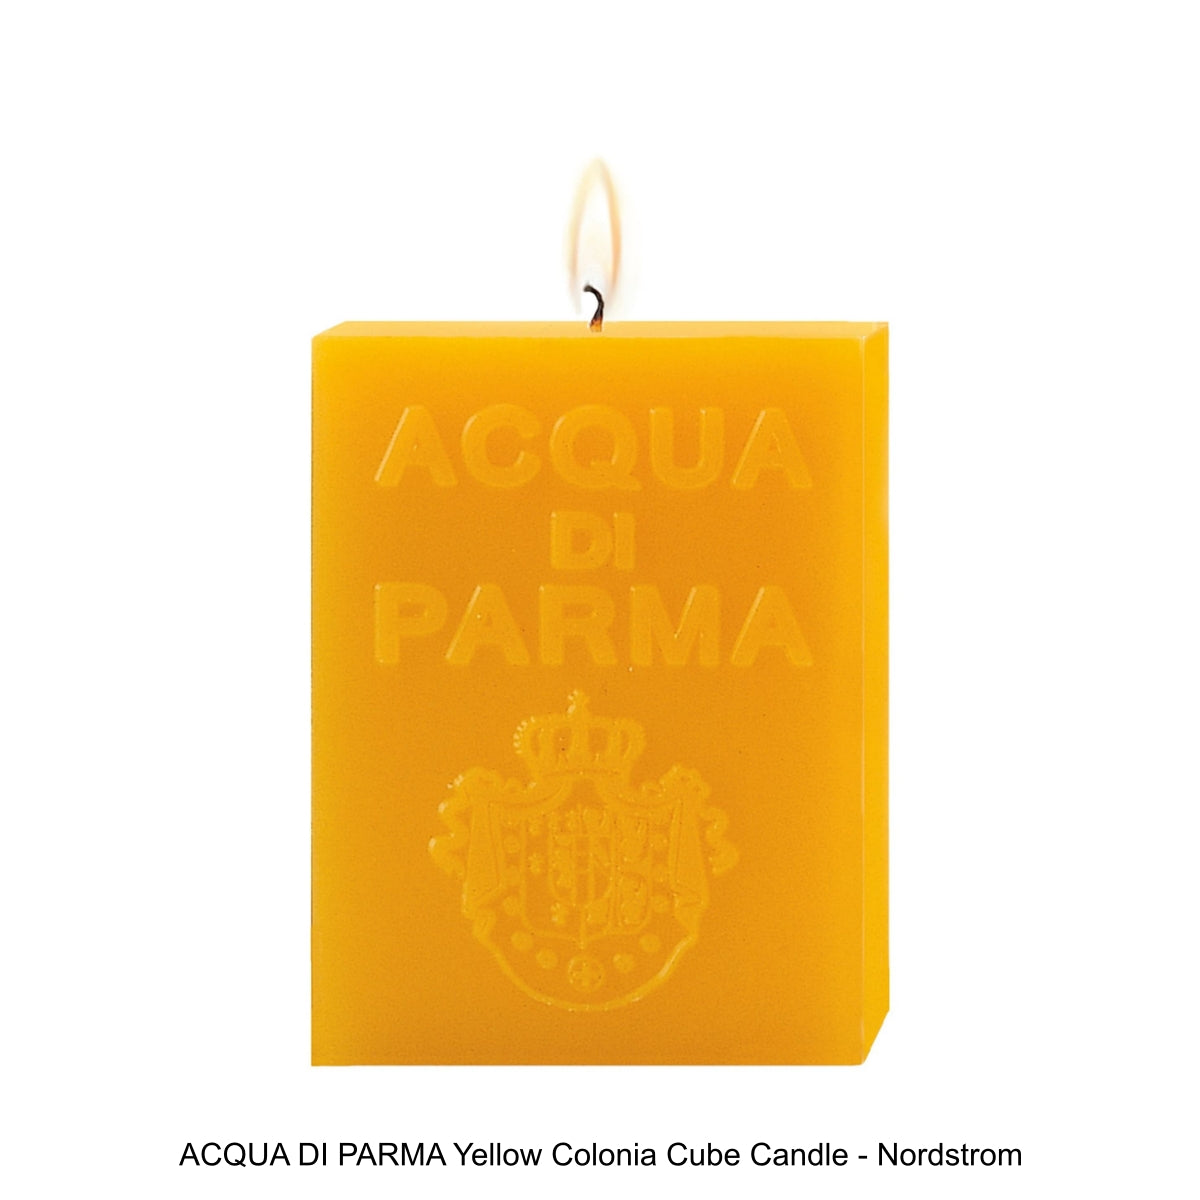 ACQUA DI PARMA Yellow Colonia Cube Candle - Nordstrom